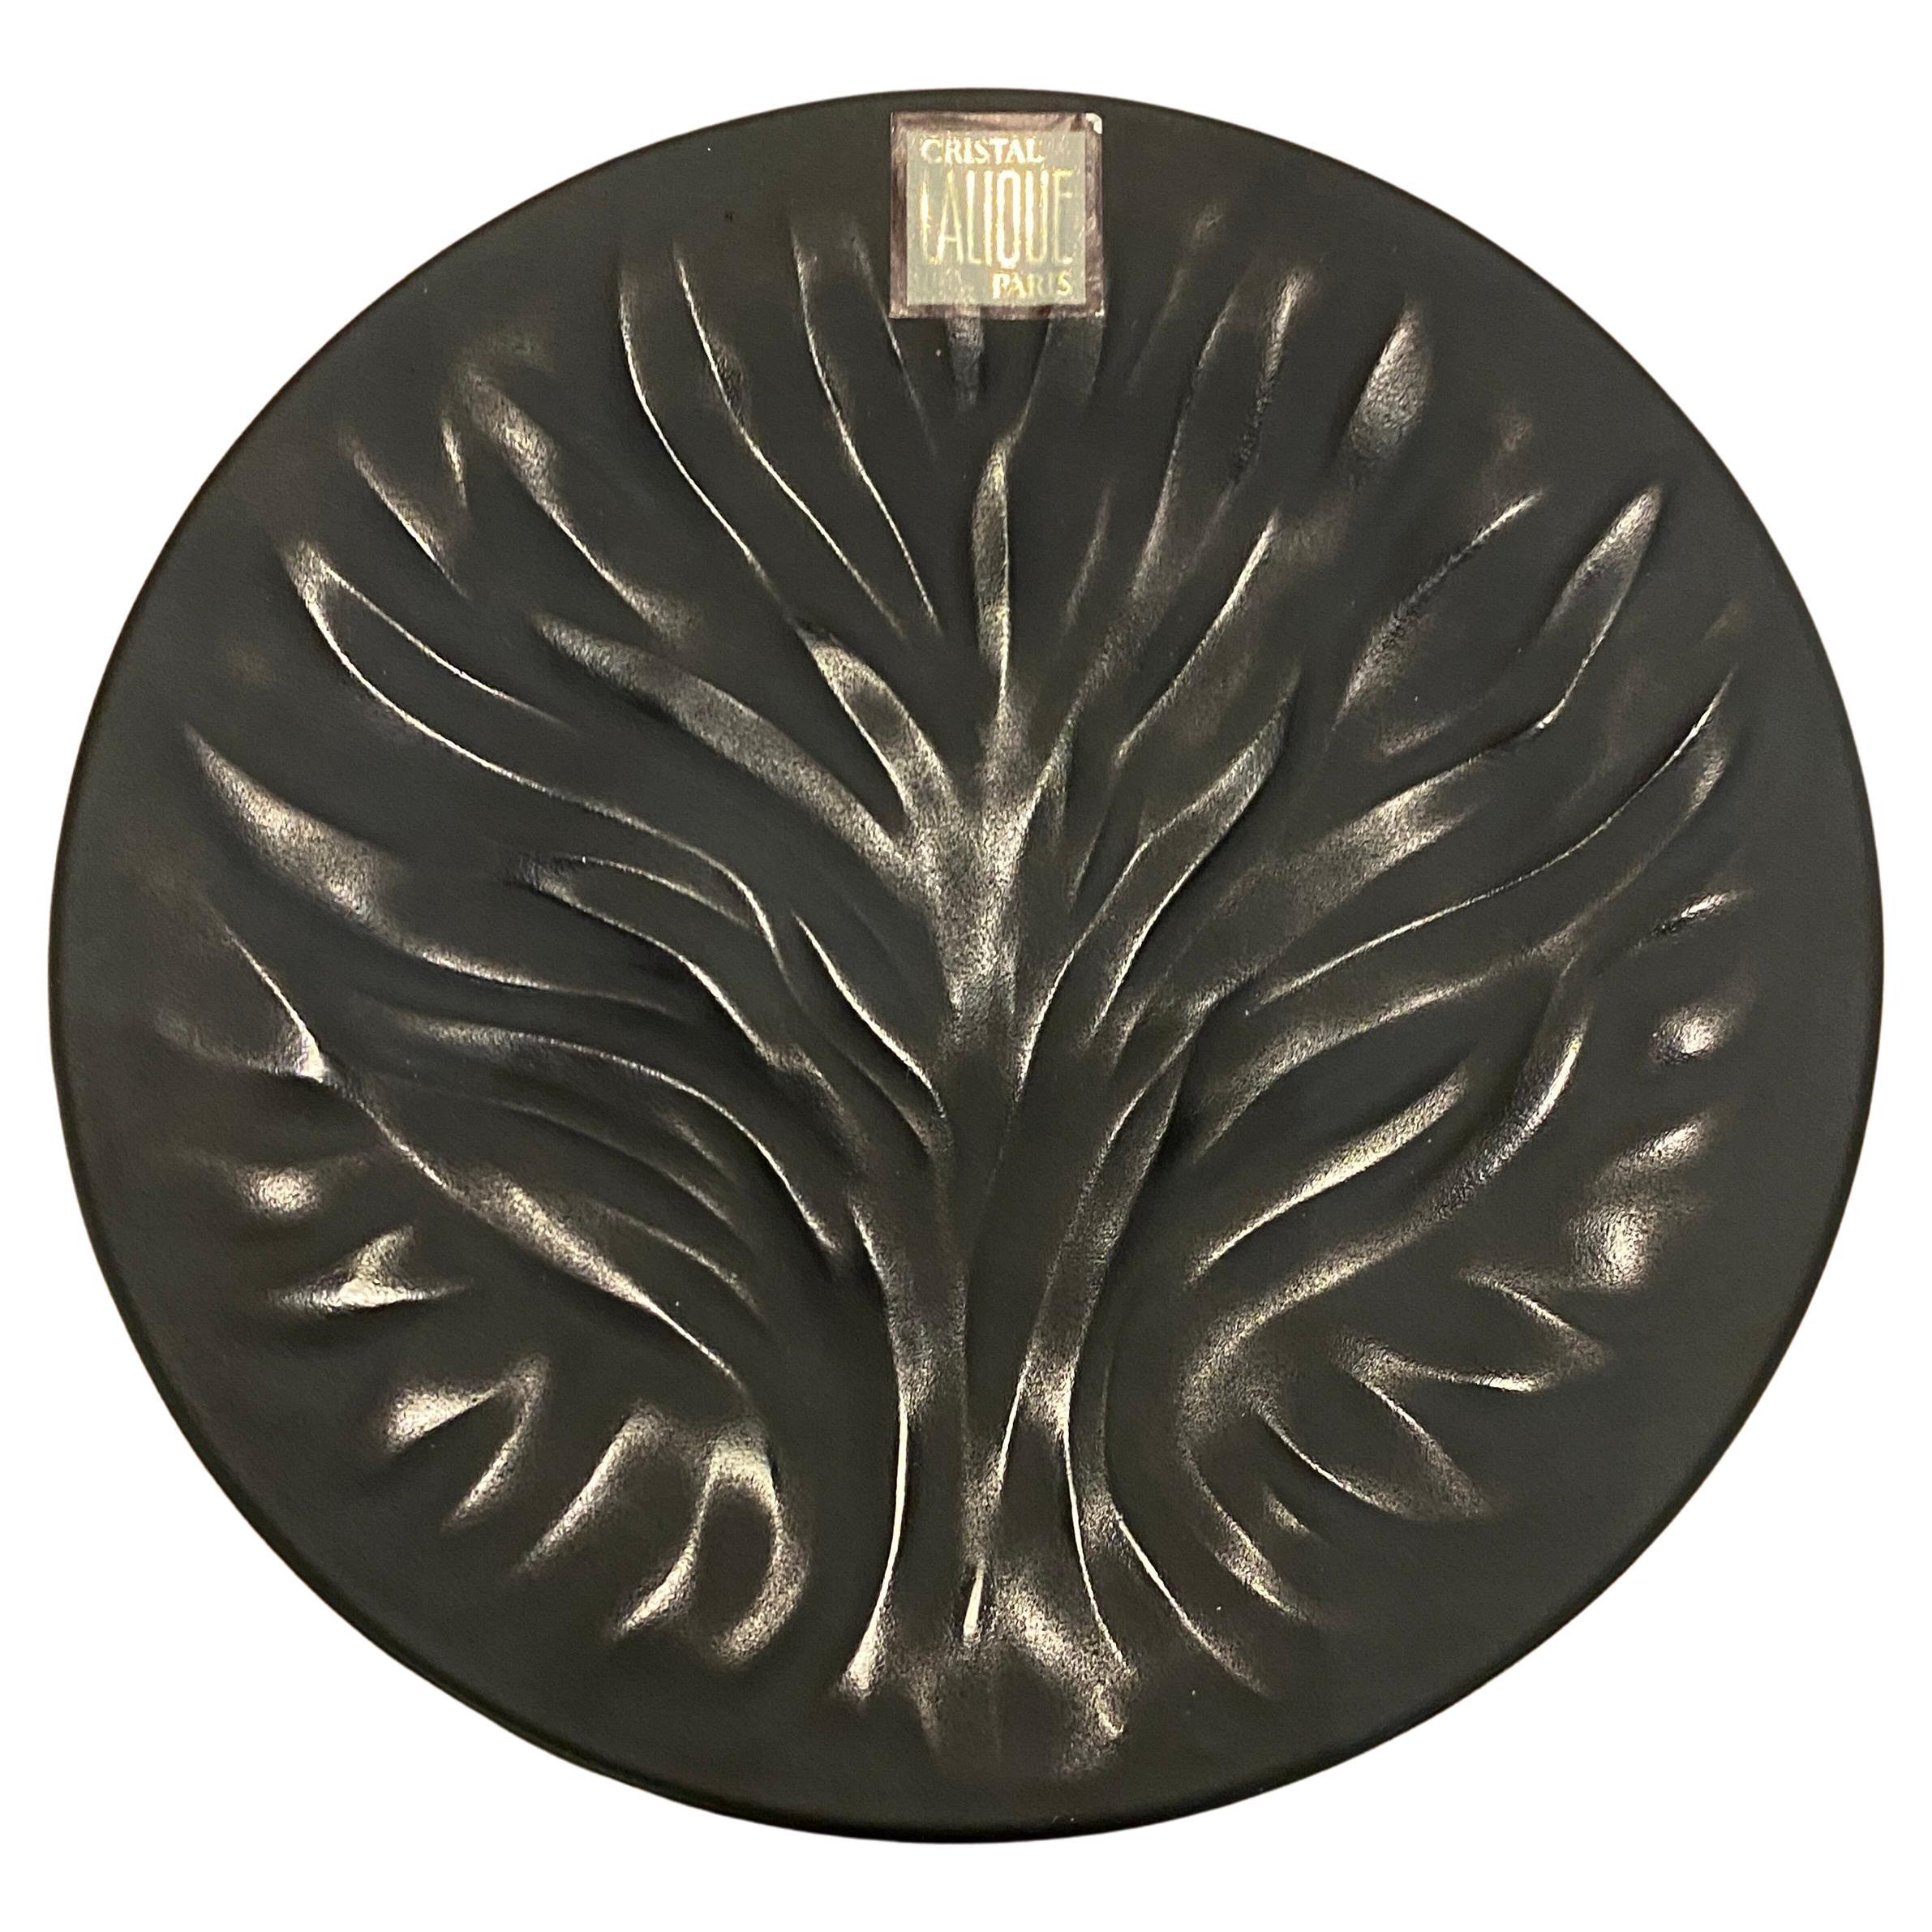 Black Cristal Algues Plates by Maison Lalique. For Sale